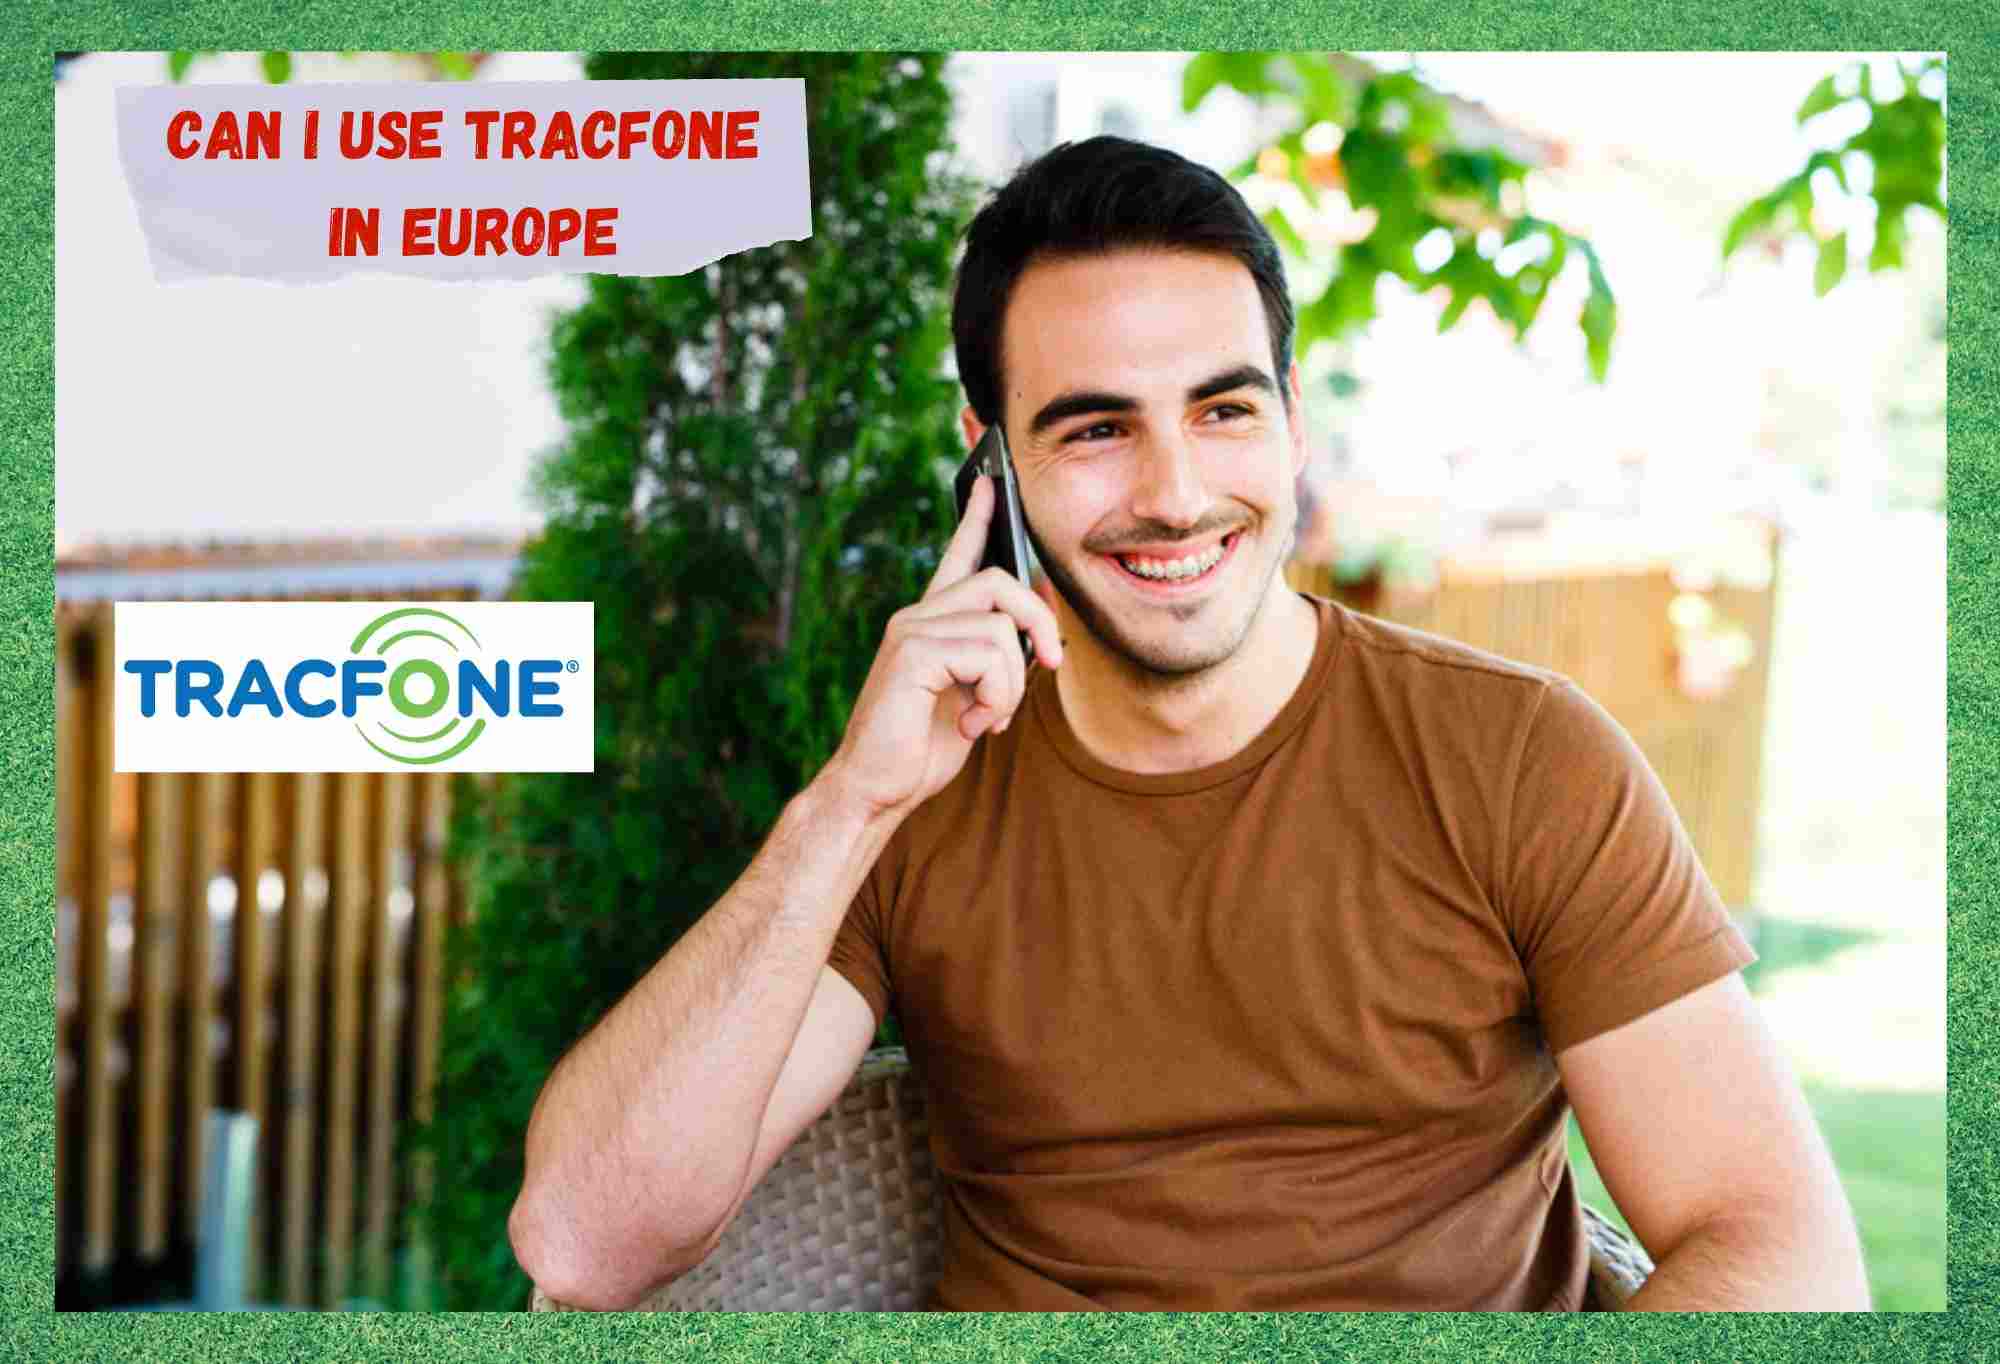 के म युरोपमा TracFone प्रयोग गर्न सक्छु? (उत्तर दिए)